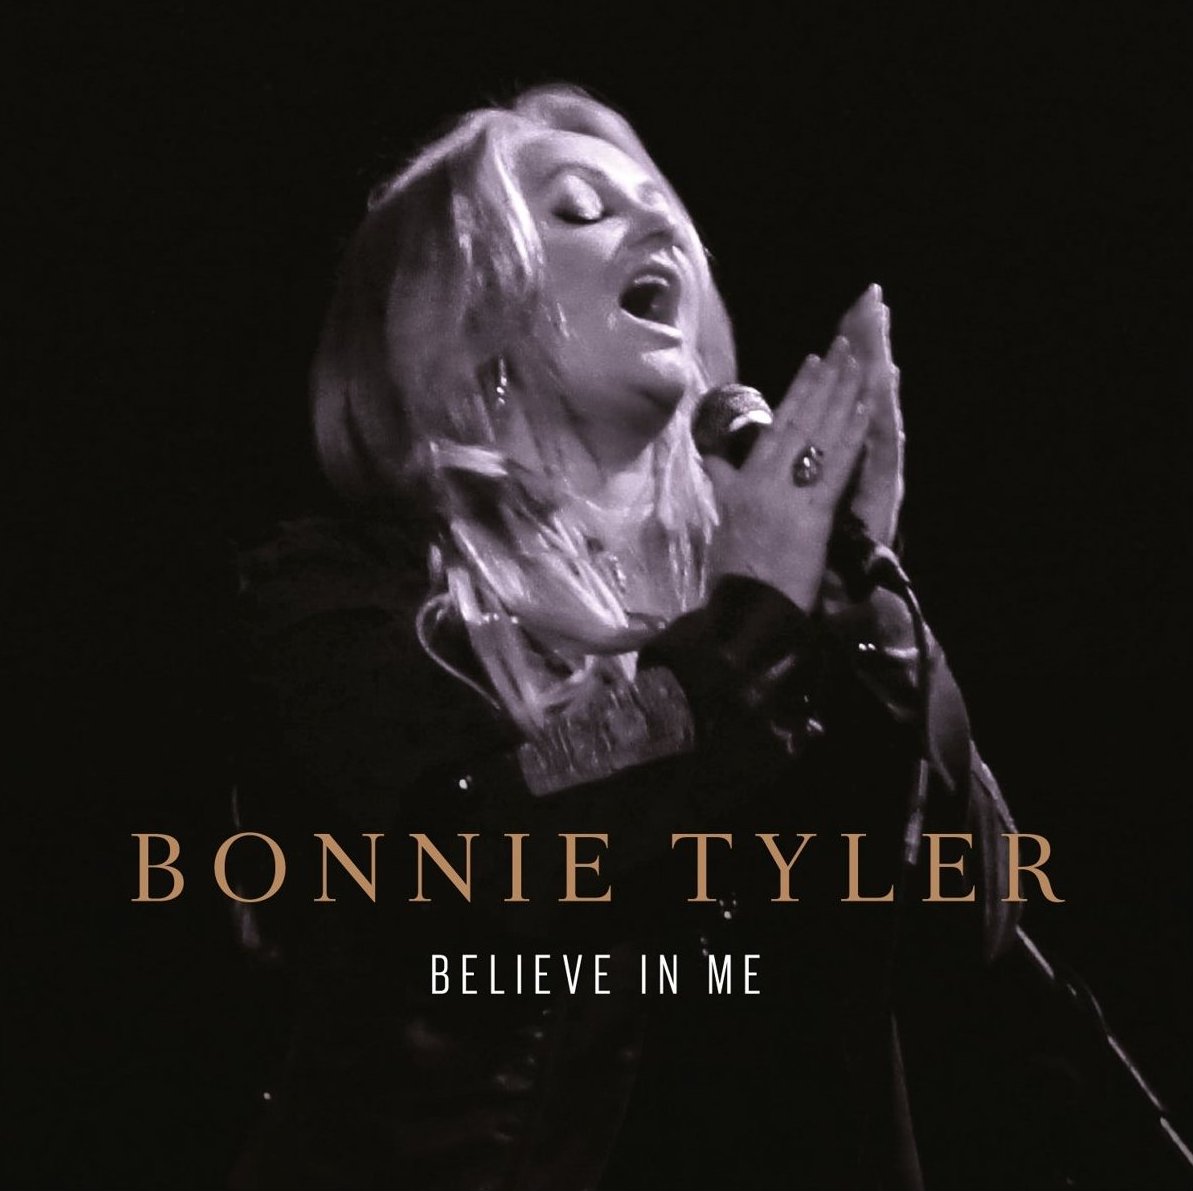 http://4.bp.blogspot.com/--eoCI2X8YWU/UTxcljriljI/AAAAAAAAHAc/ZeTWq0BrOTE/s1600/Bonnie+Tyler+Believe+In+Me.jpg